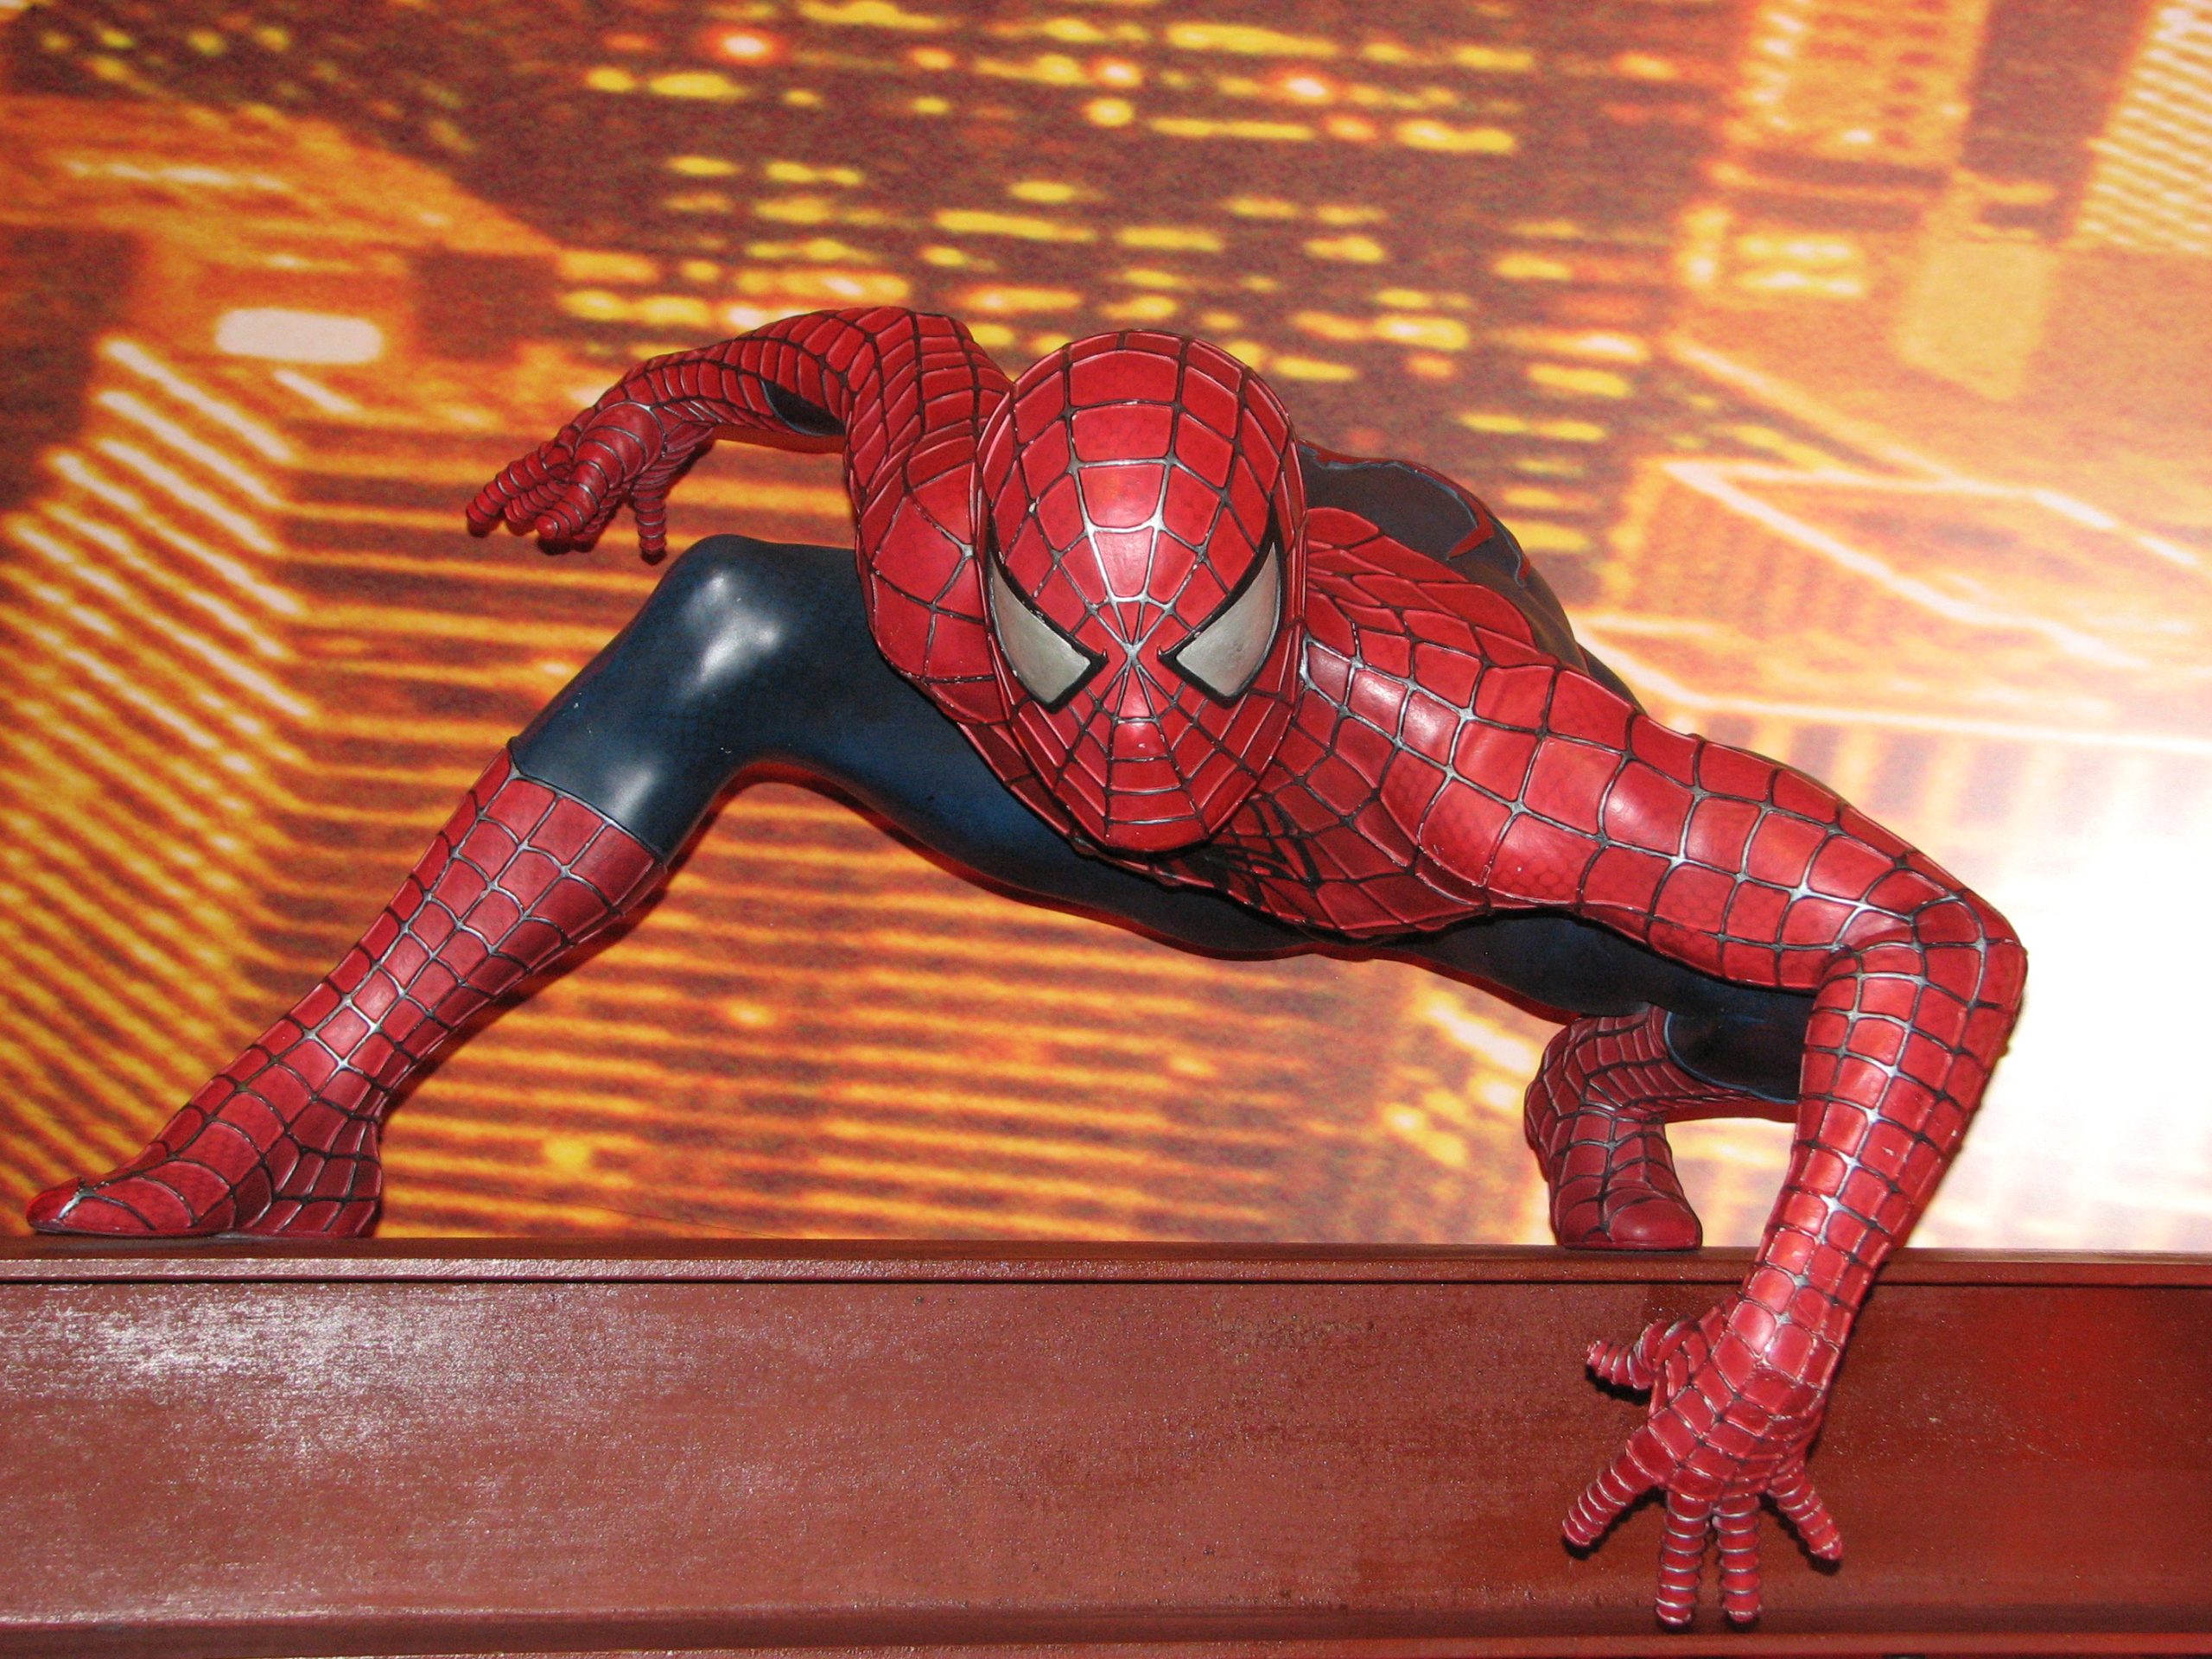 Siêu anh hùng Spider-man